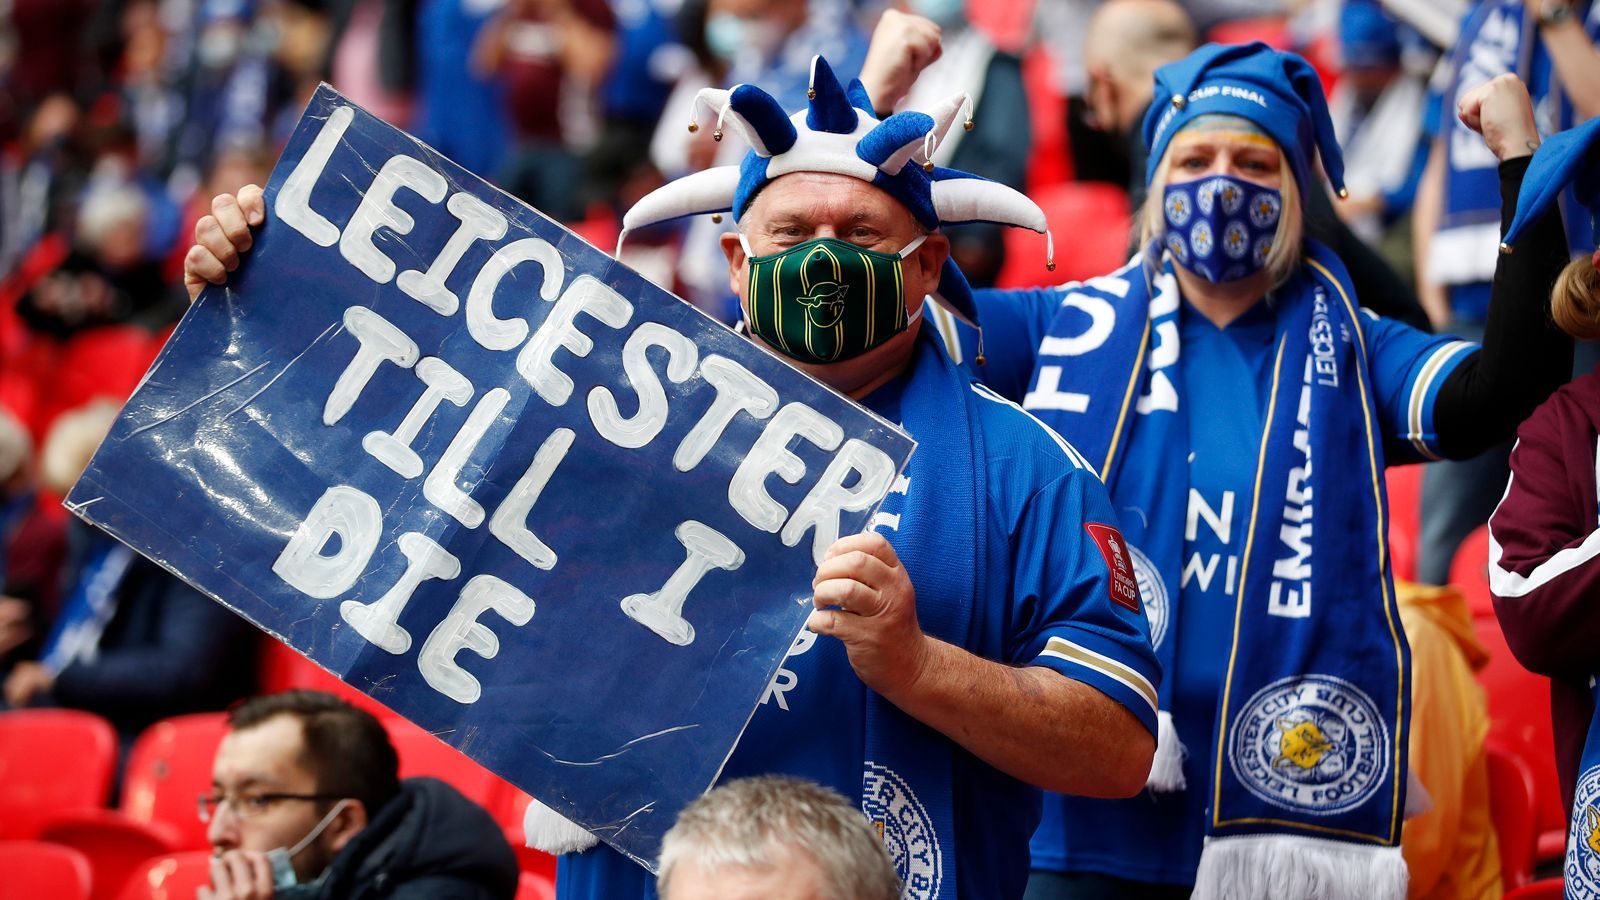 
                <strong>Leicester Till I Die </strong><br>
                Für diese Anhänger von Leicester gibt es keinen Zweifel an ihrer Loyalität gegenüber ihrem Klub. "Leicester bis ich sterbe", steht auf dem Banner geschrieben. 
              